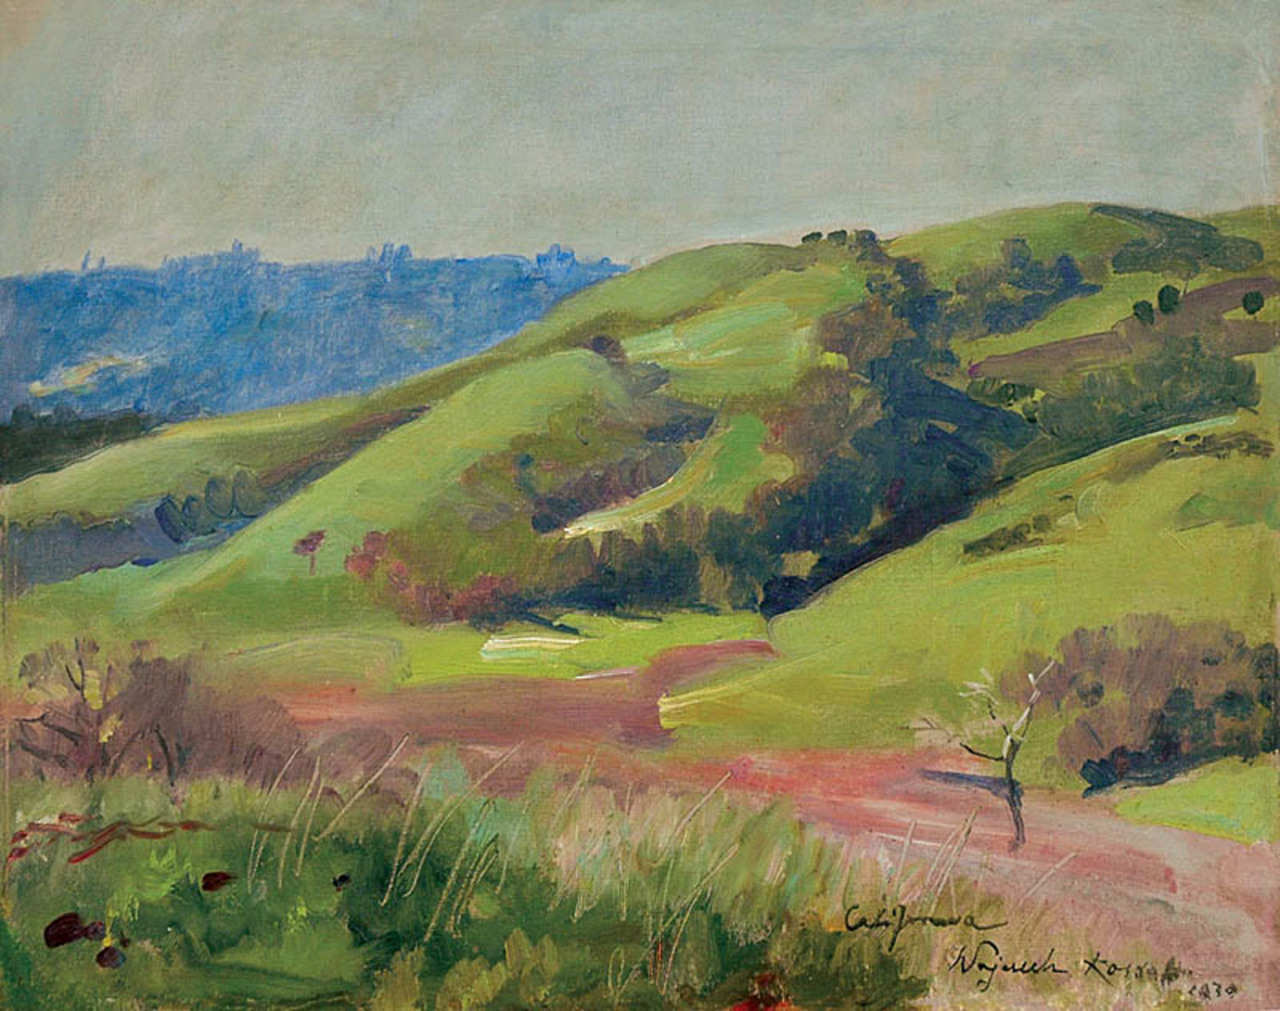 Wojciech Kossak (1856-1942), "Pejzaż z Kaliforni", 1930 rok, źródło: Rempex